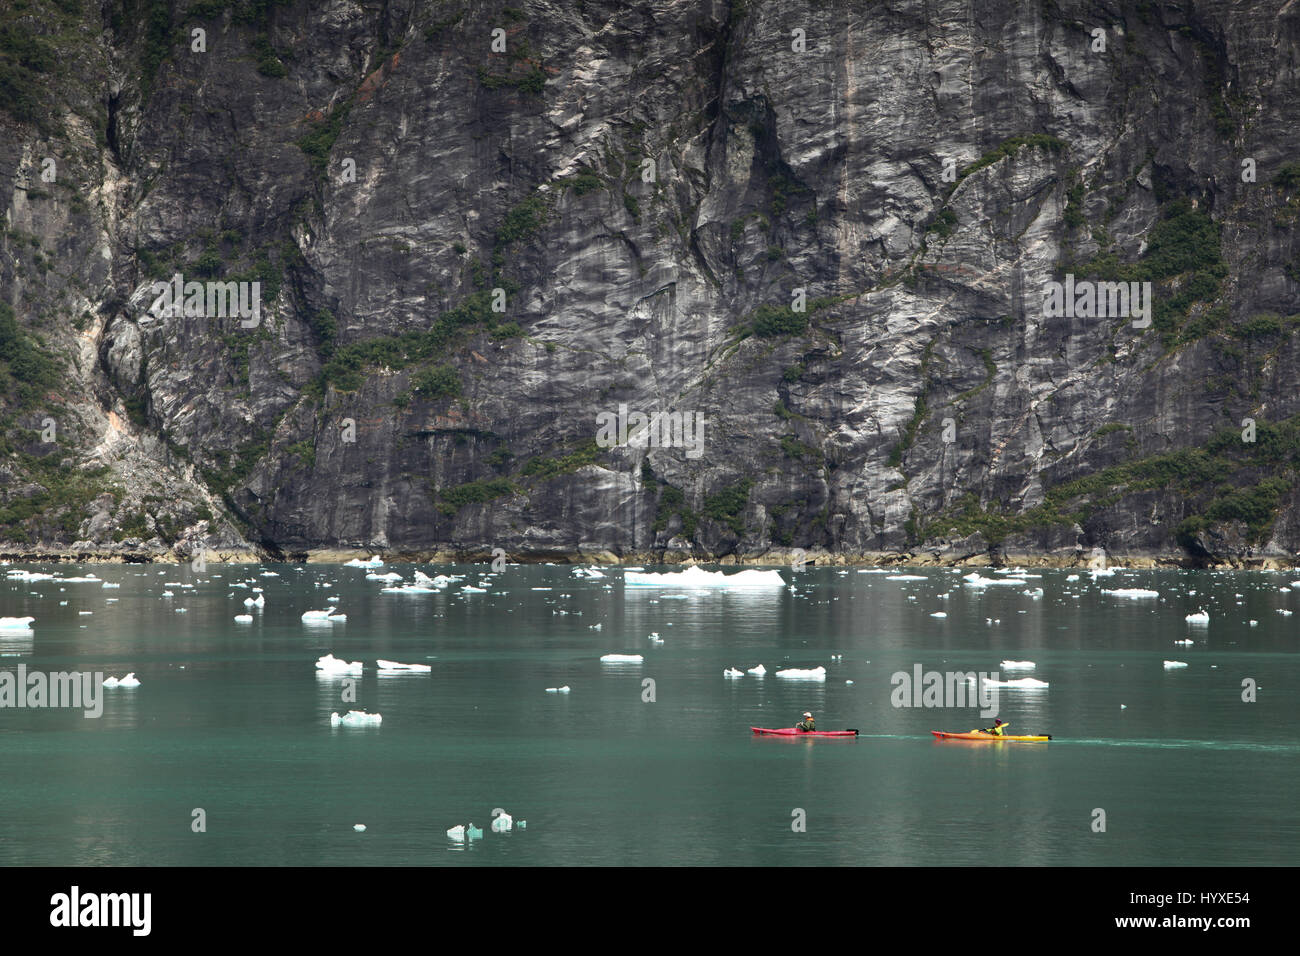 Nei pressi di una cesoia rockface, viaggiatori in kayak navigare l'acqua intorno iceberg. Foto Stock